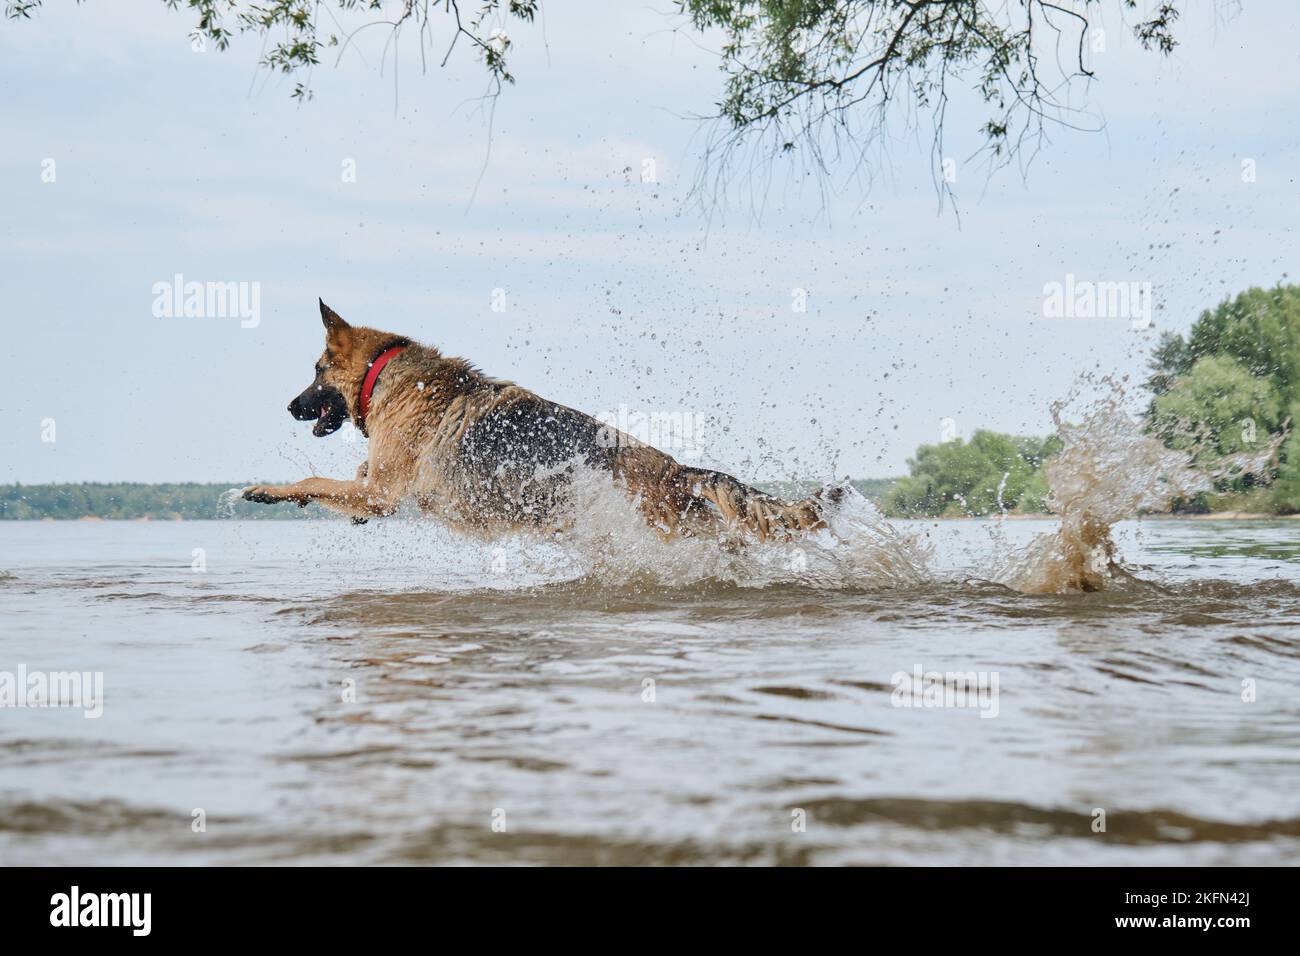 German Shepherd hat Spaß beim Schwimmen im Fluss im Sommer. Hund läuft schnell in See und springt, Spritzer fliegen in verschiedene Richtungen. Aktiv und energet Stockfoto